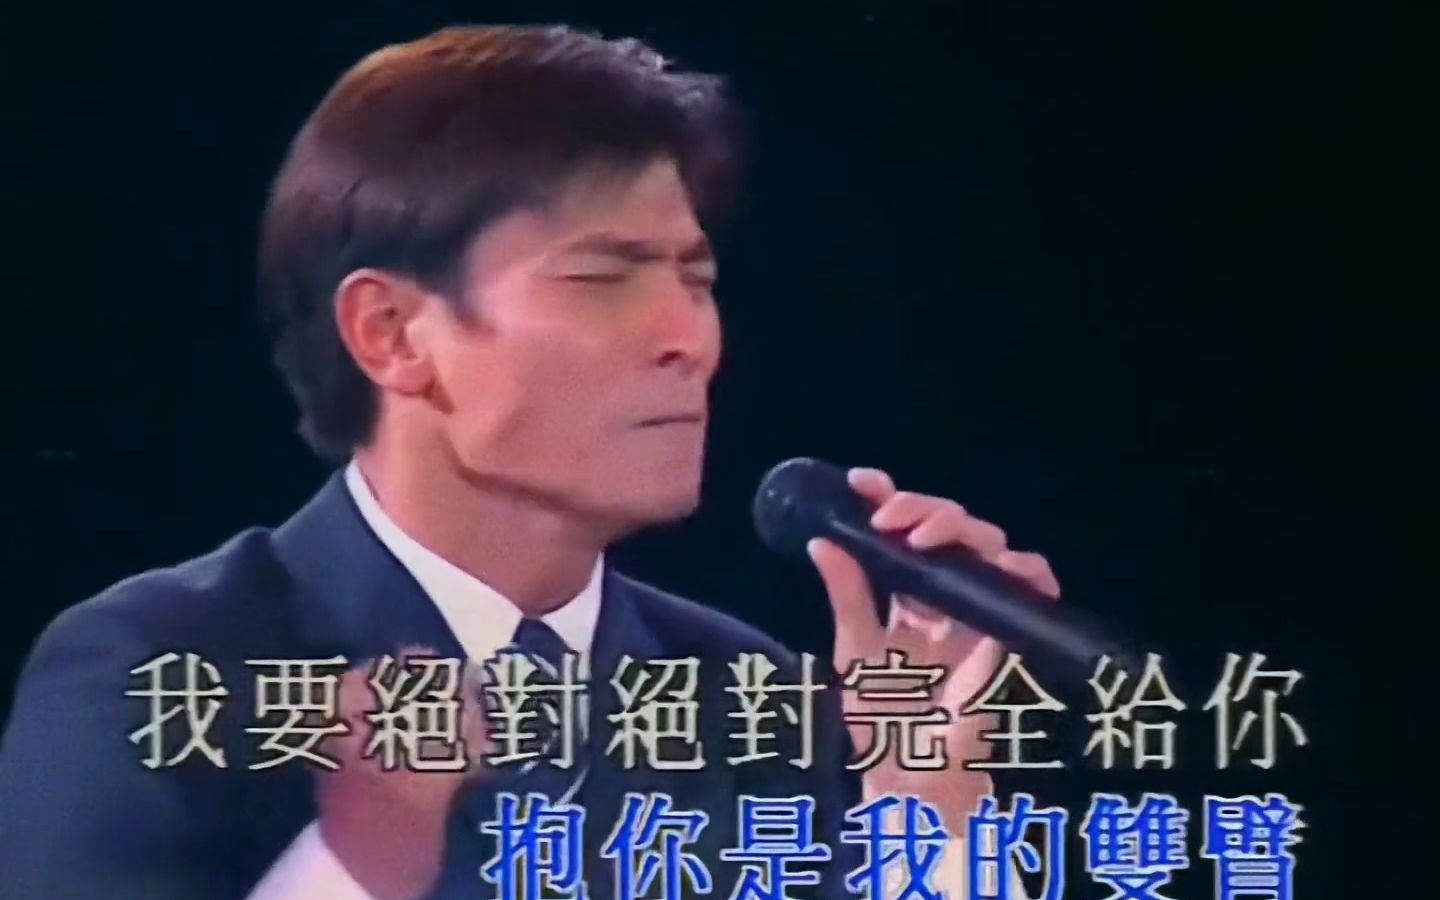 1996年演唱会,35岁的刘德华已经是全民偶像,不老天王,出道至今四十